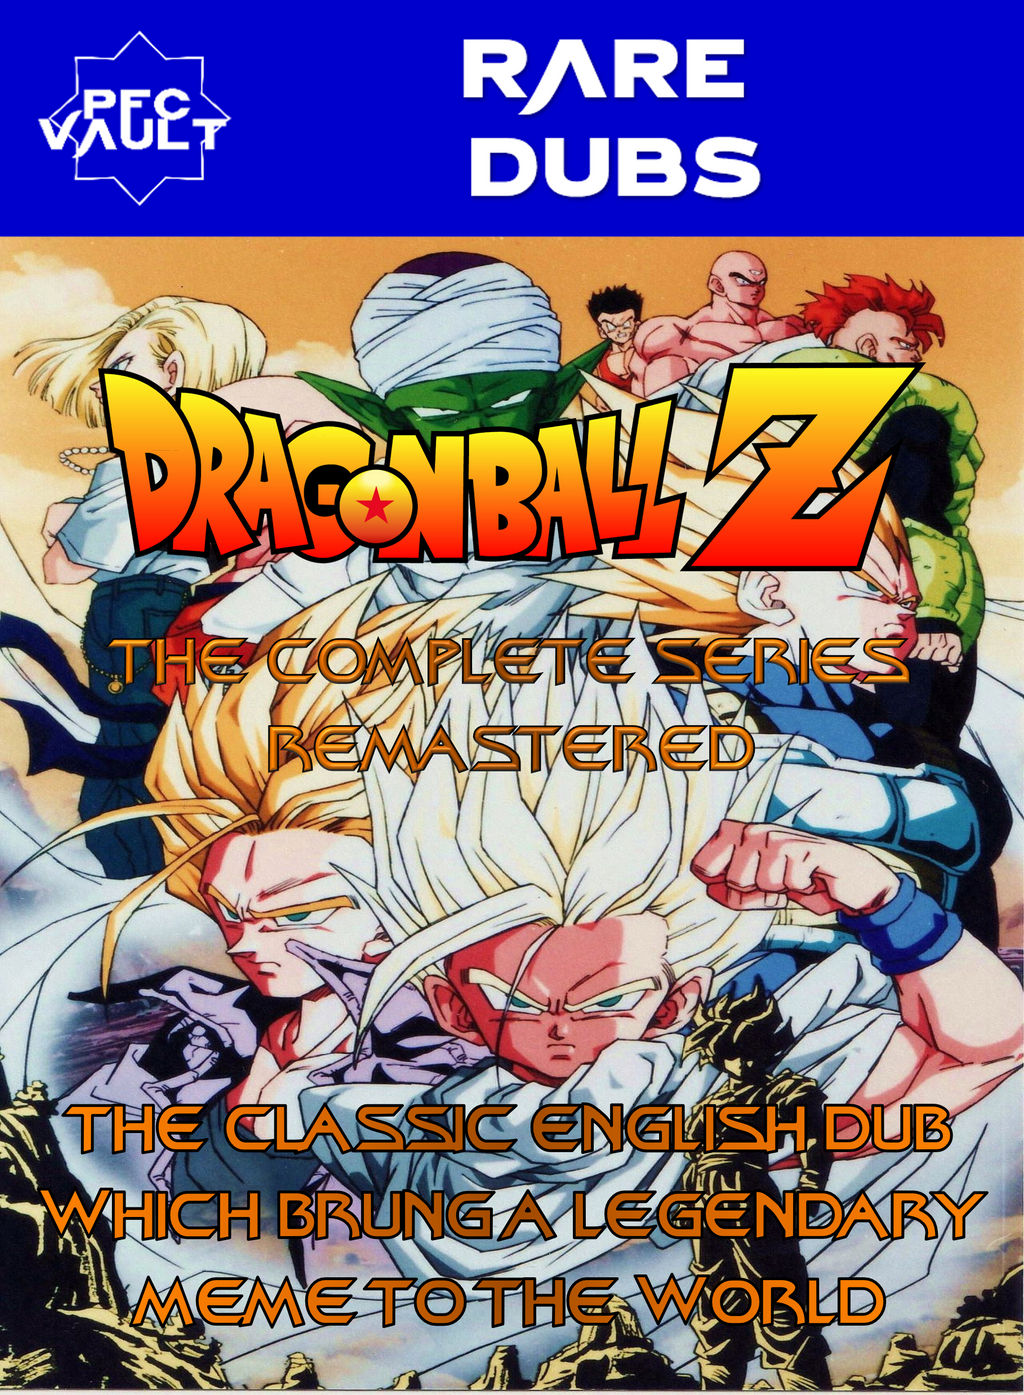 Dragon Ball Z - Série Completa Em DVD